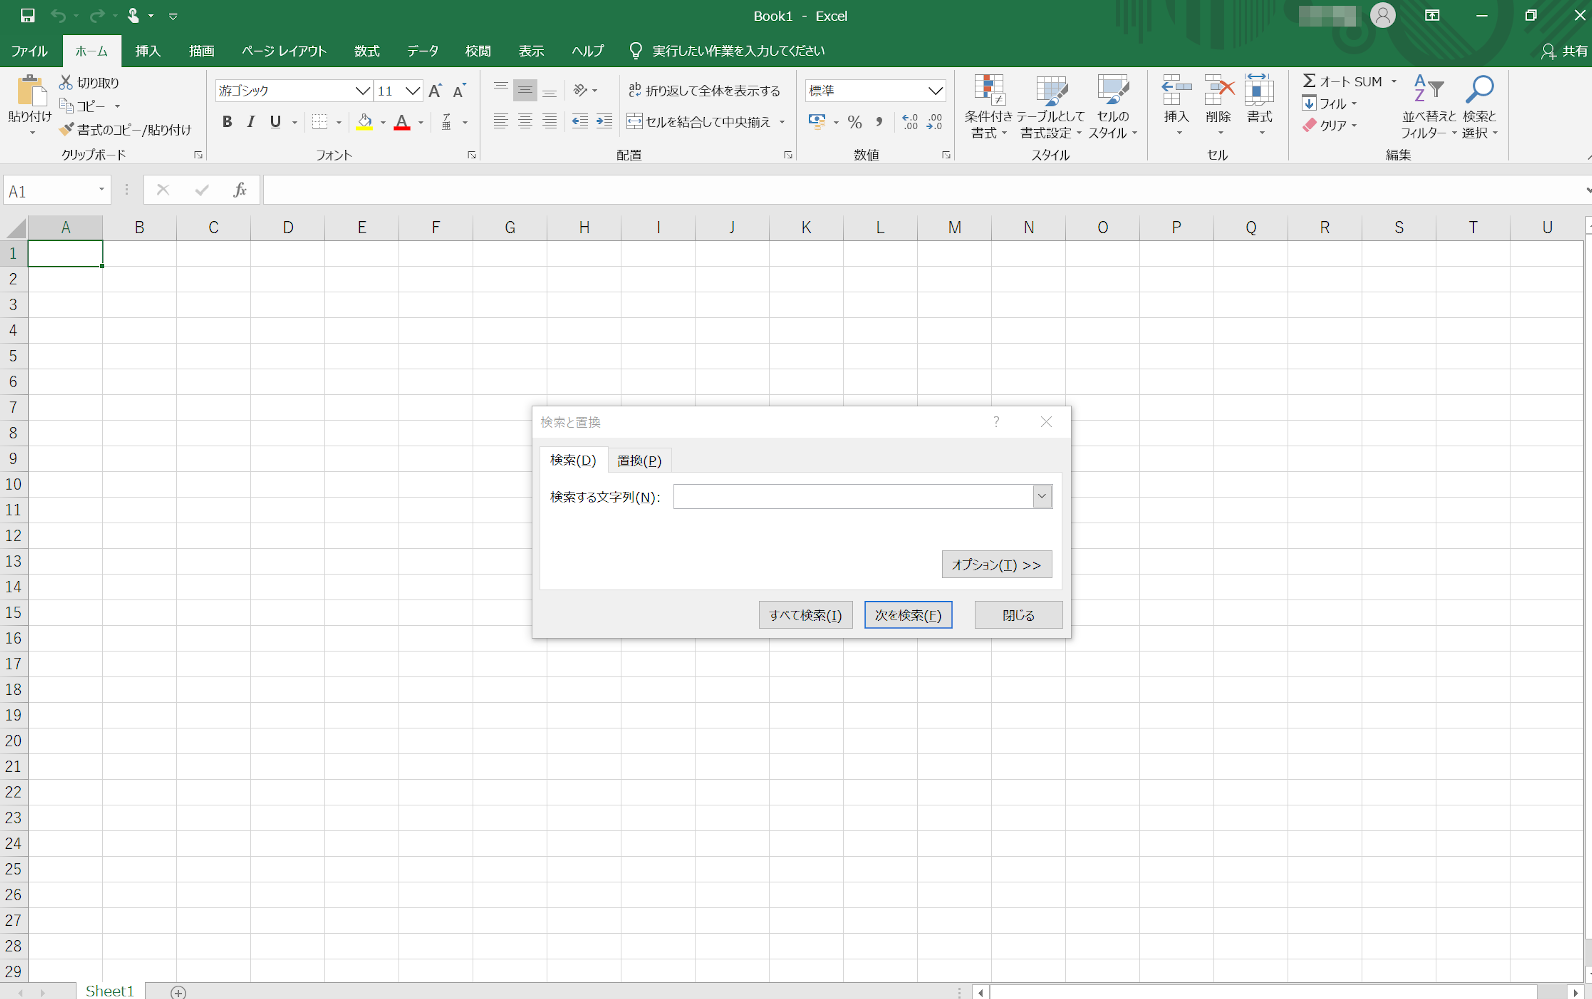 Microsoft Office ExcelのUI画面。「検索と置換」ダイアログボックスを開いているところ